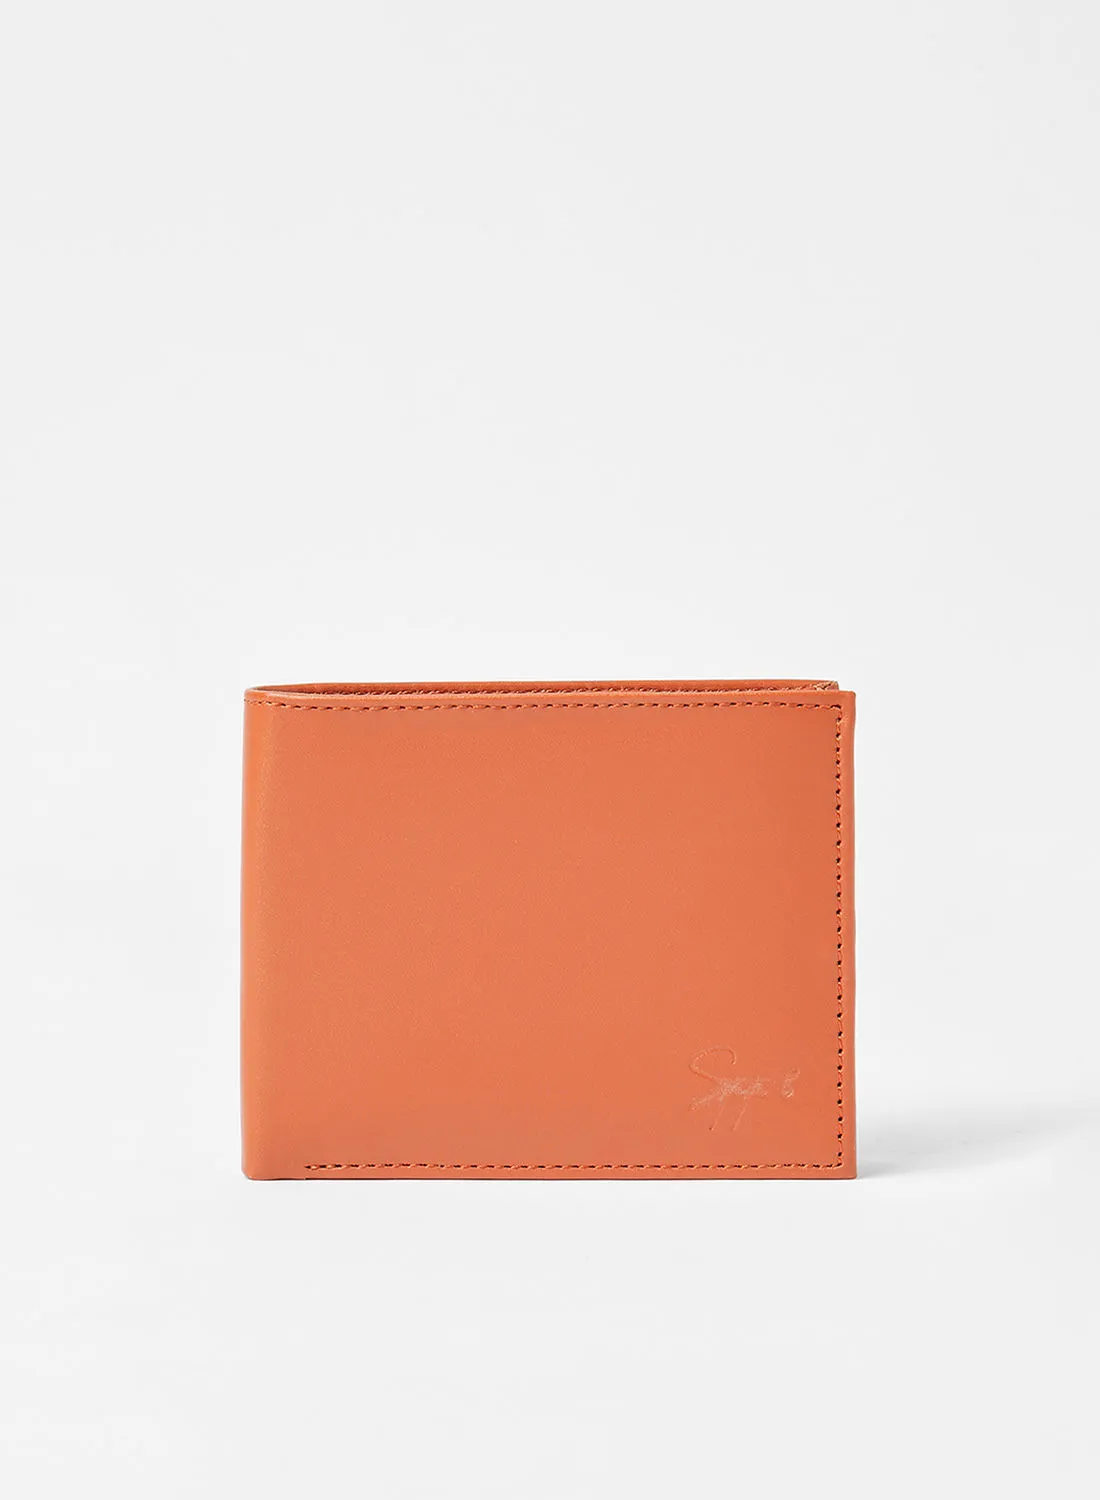 STATE 8 Bi-Fold Wallet Light Brown